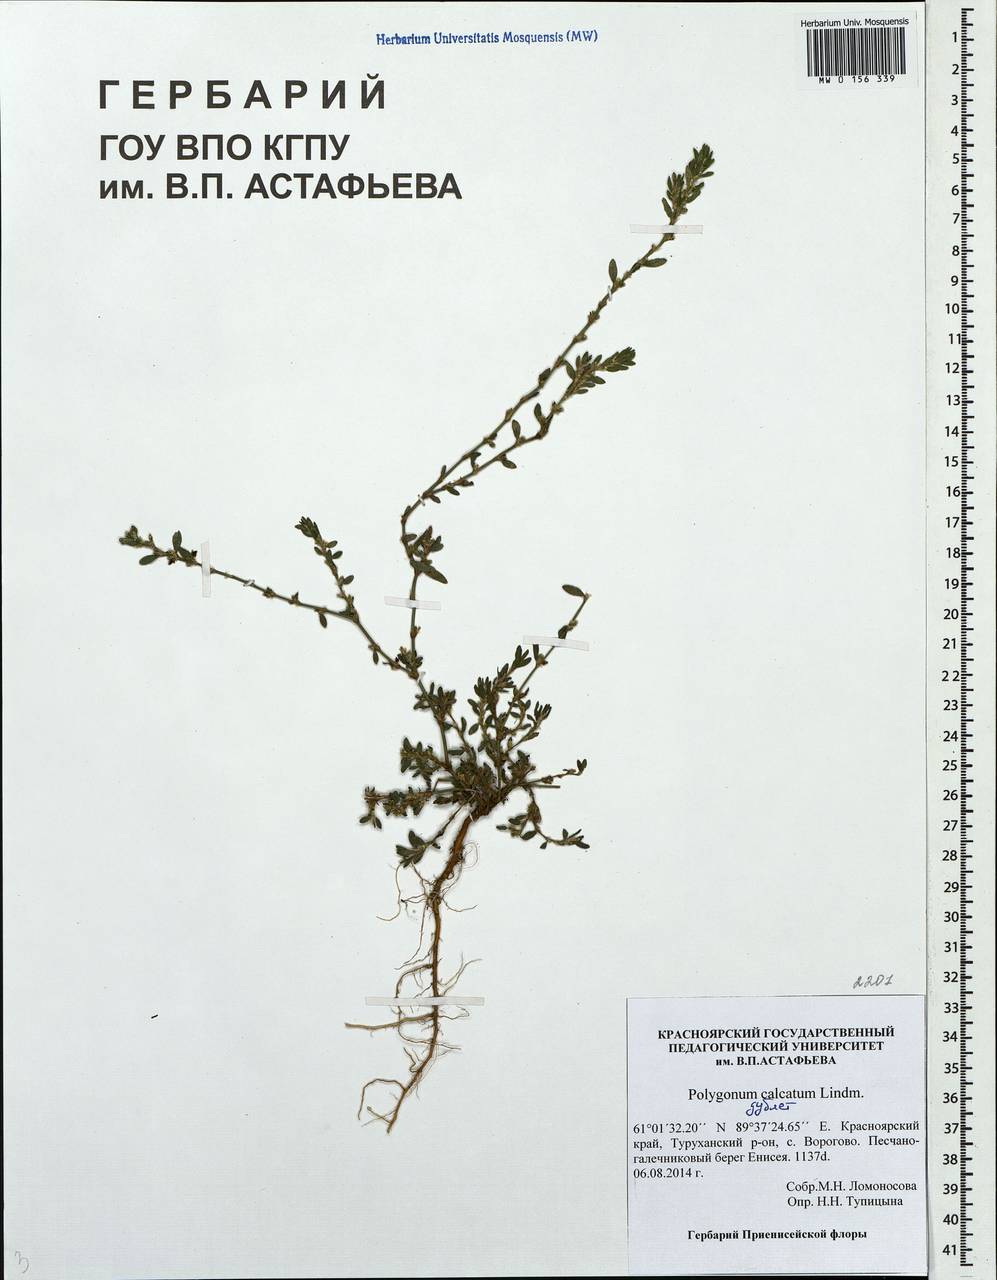 Polygonum arenastrum subsp. calcatum (Lindm.) Wisskirchen, Siberia, Central Siberia (S3) (Russia)